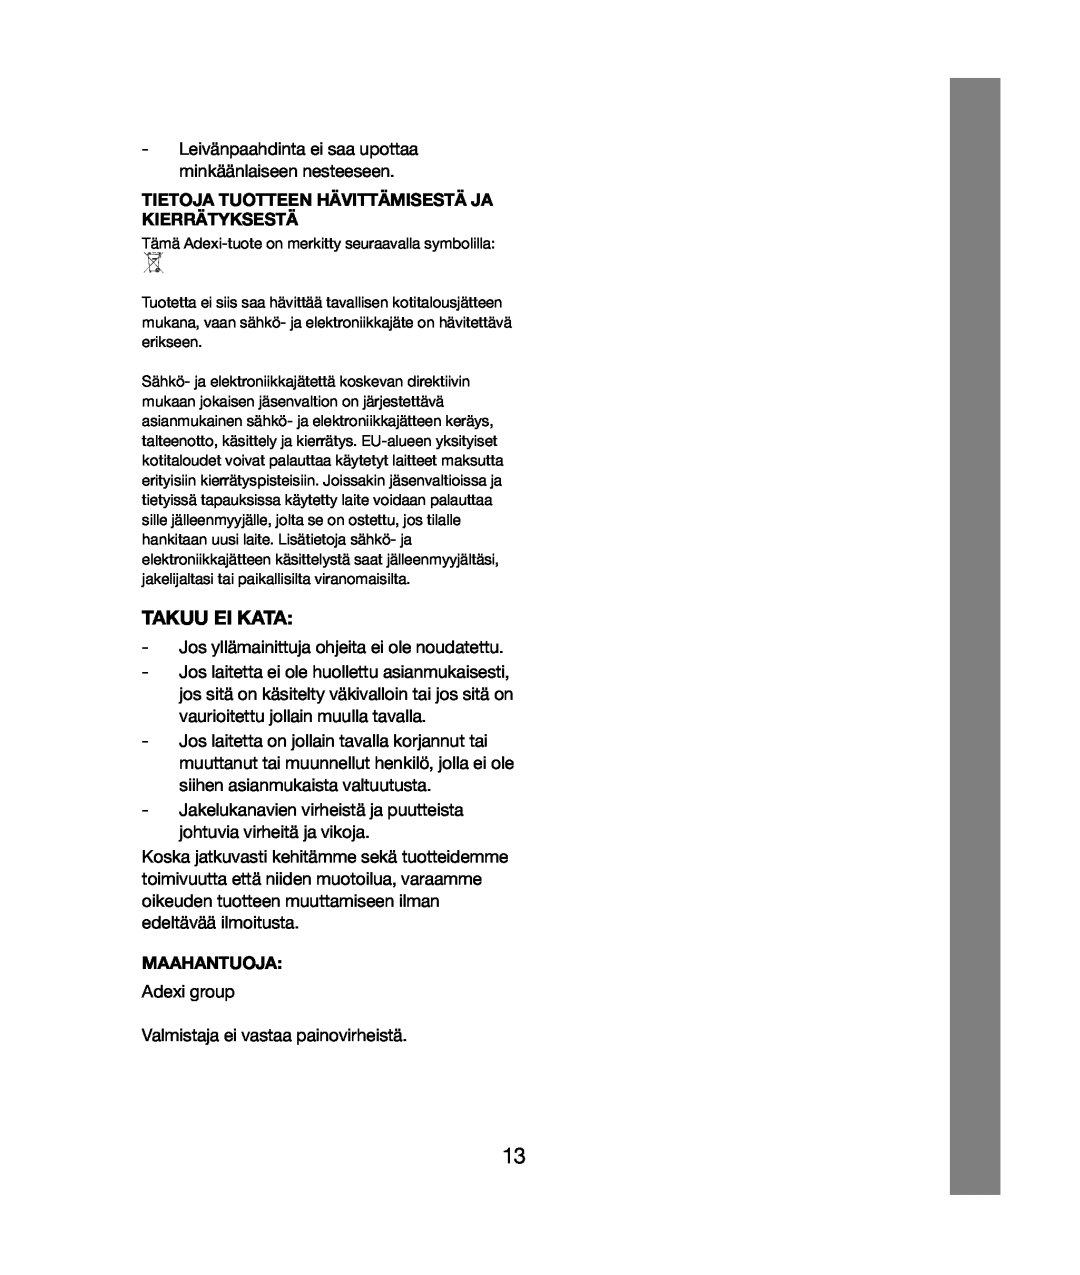 Melissa 243-023/034 manual Takuu Ei Kata, Tietoja Tuotteen Hävittämisestä Ja Kierrätyksestä, Maahantuoja 